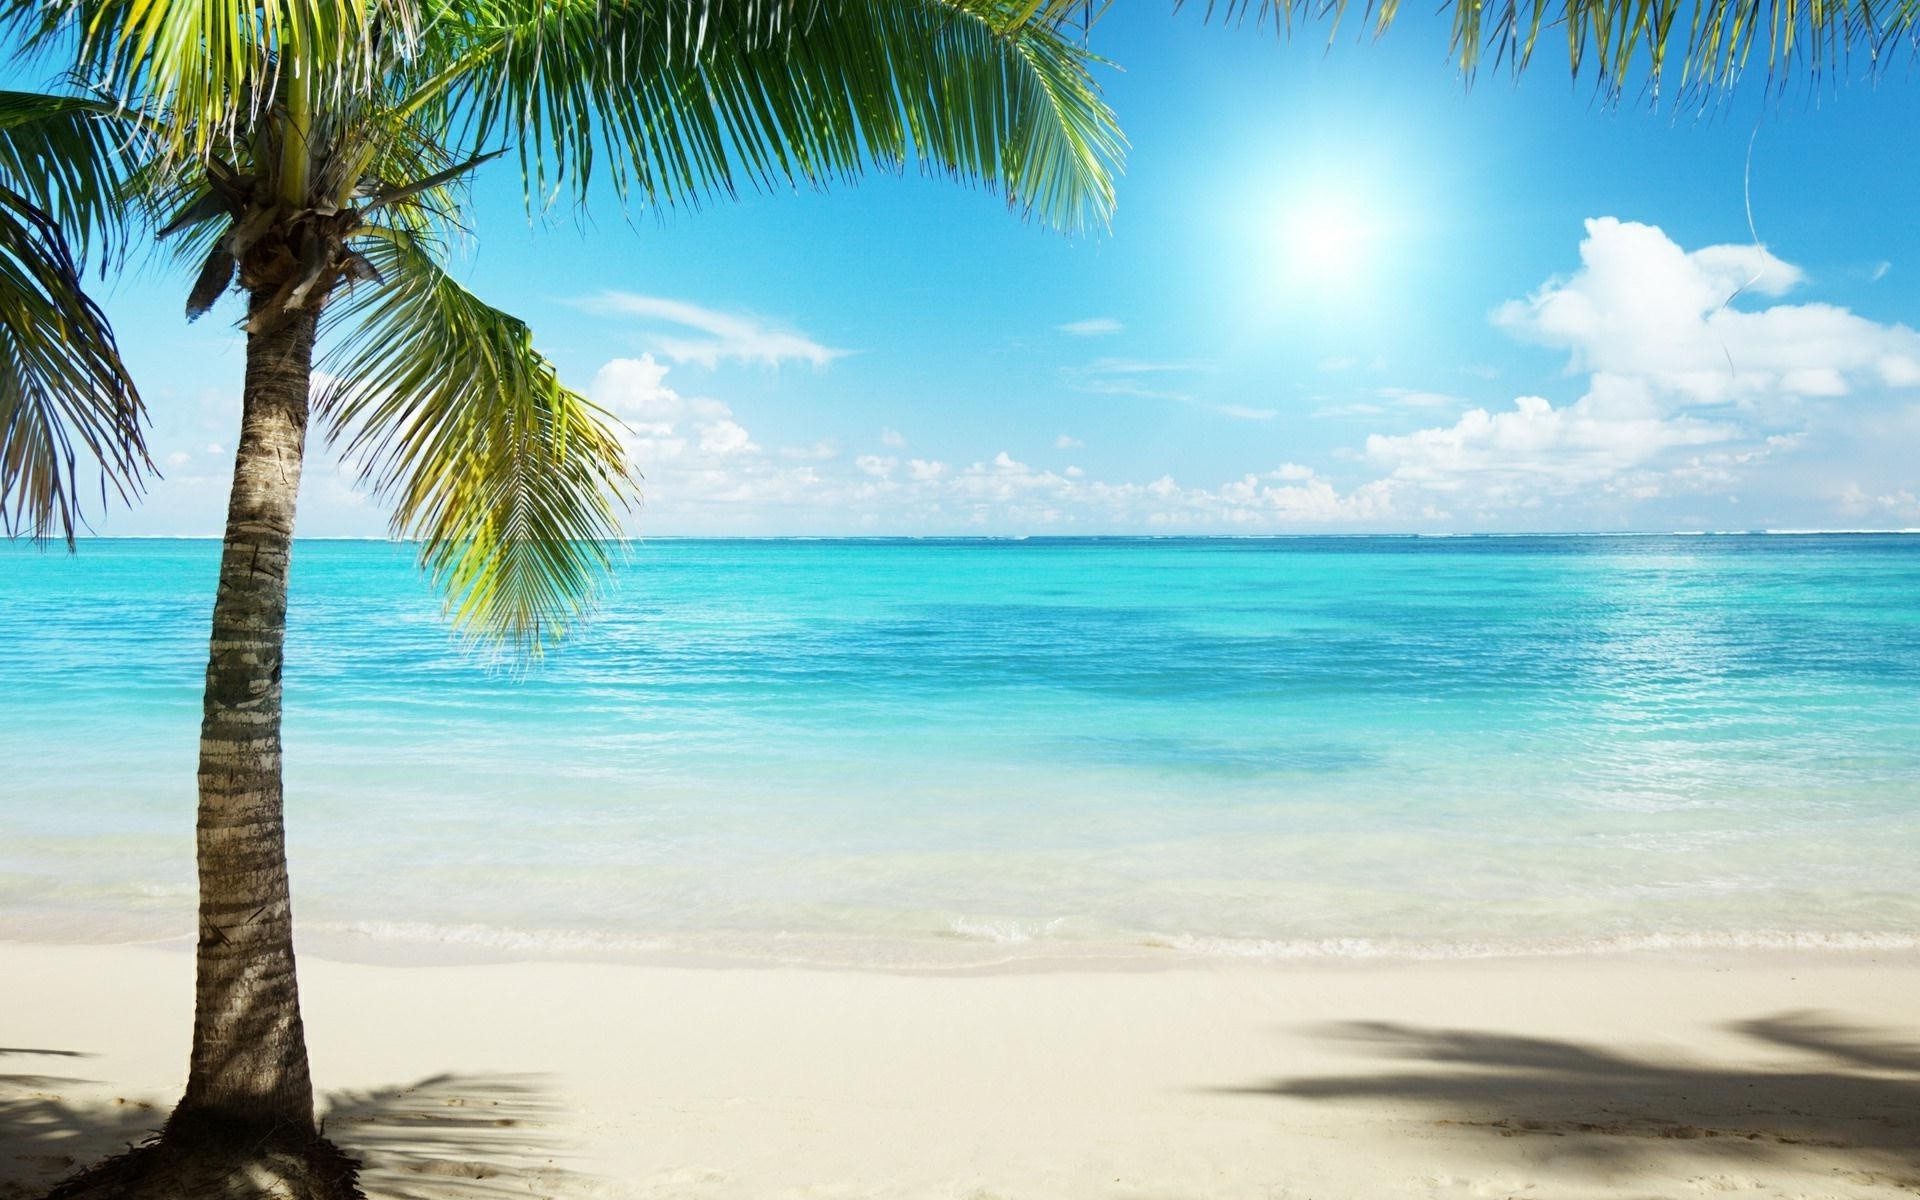 Bãi biển nhiệt đới - Hình ảnh bãi biển nhiệt đới - nắng vàng, cát trắng và biển xanh, sẽ khiến bất kì ai cũng muốn đặt chân đến những thảm cỏ biển trải dài, tận hưởng đầy đủ cảm giác mát mẻ, sảng khoái của biển trong mùa hè này. 